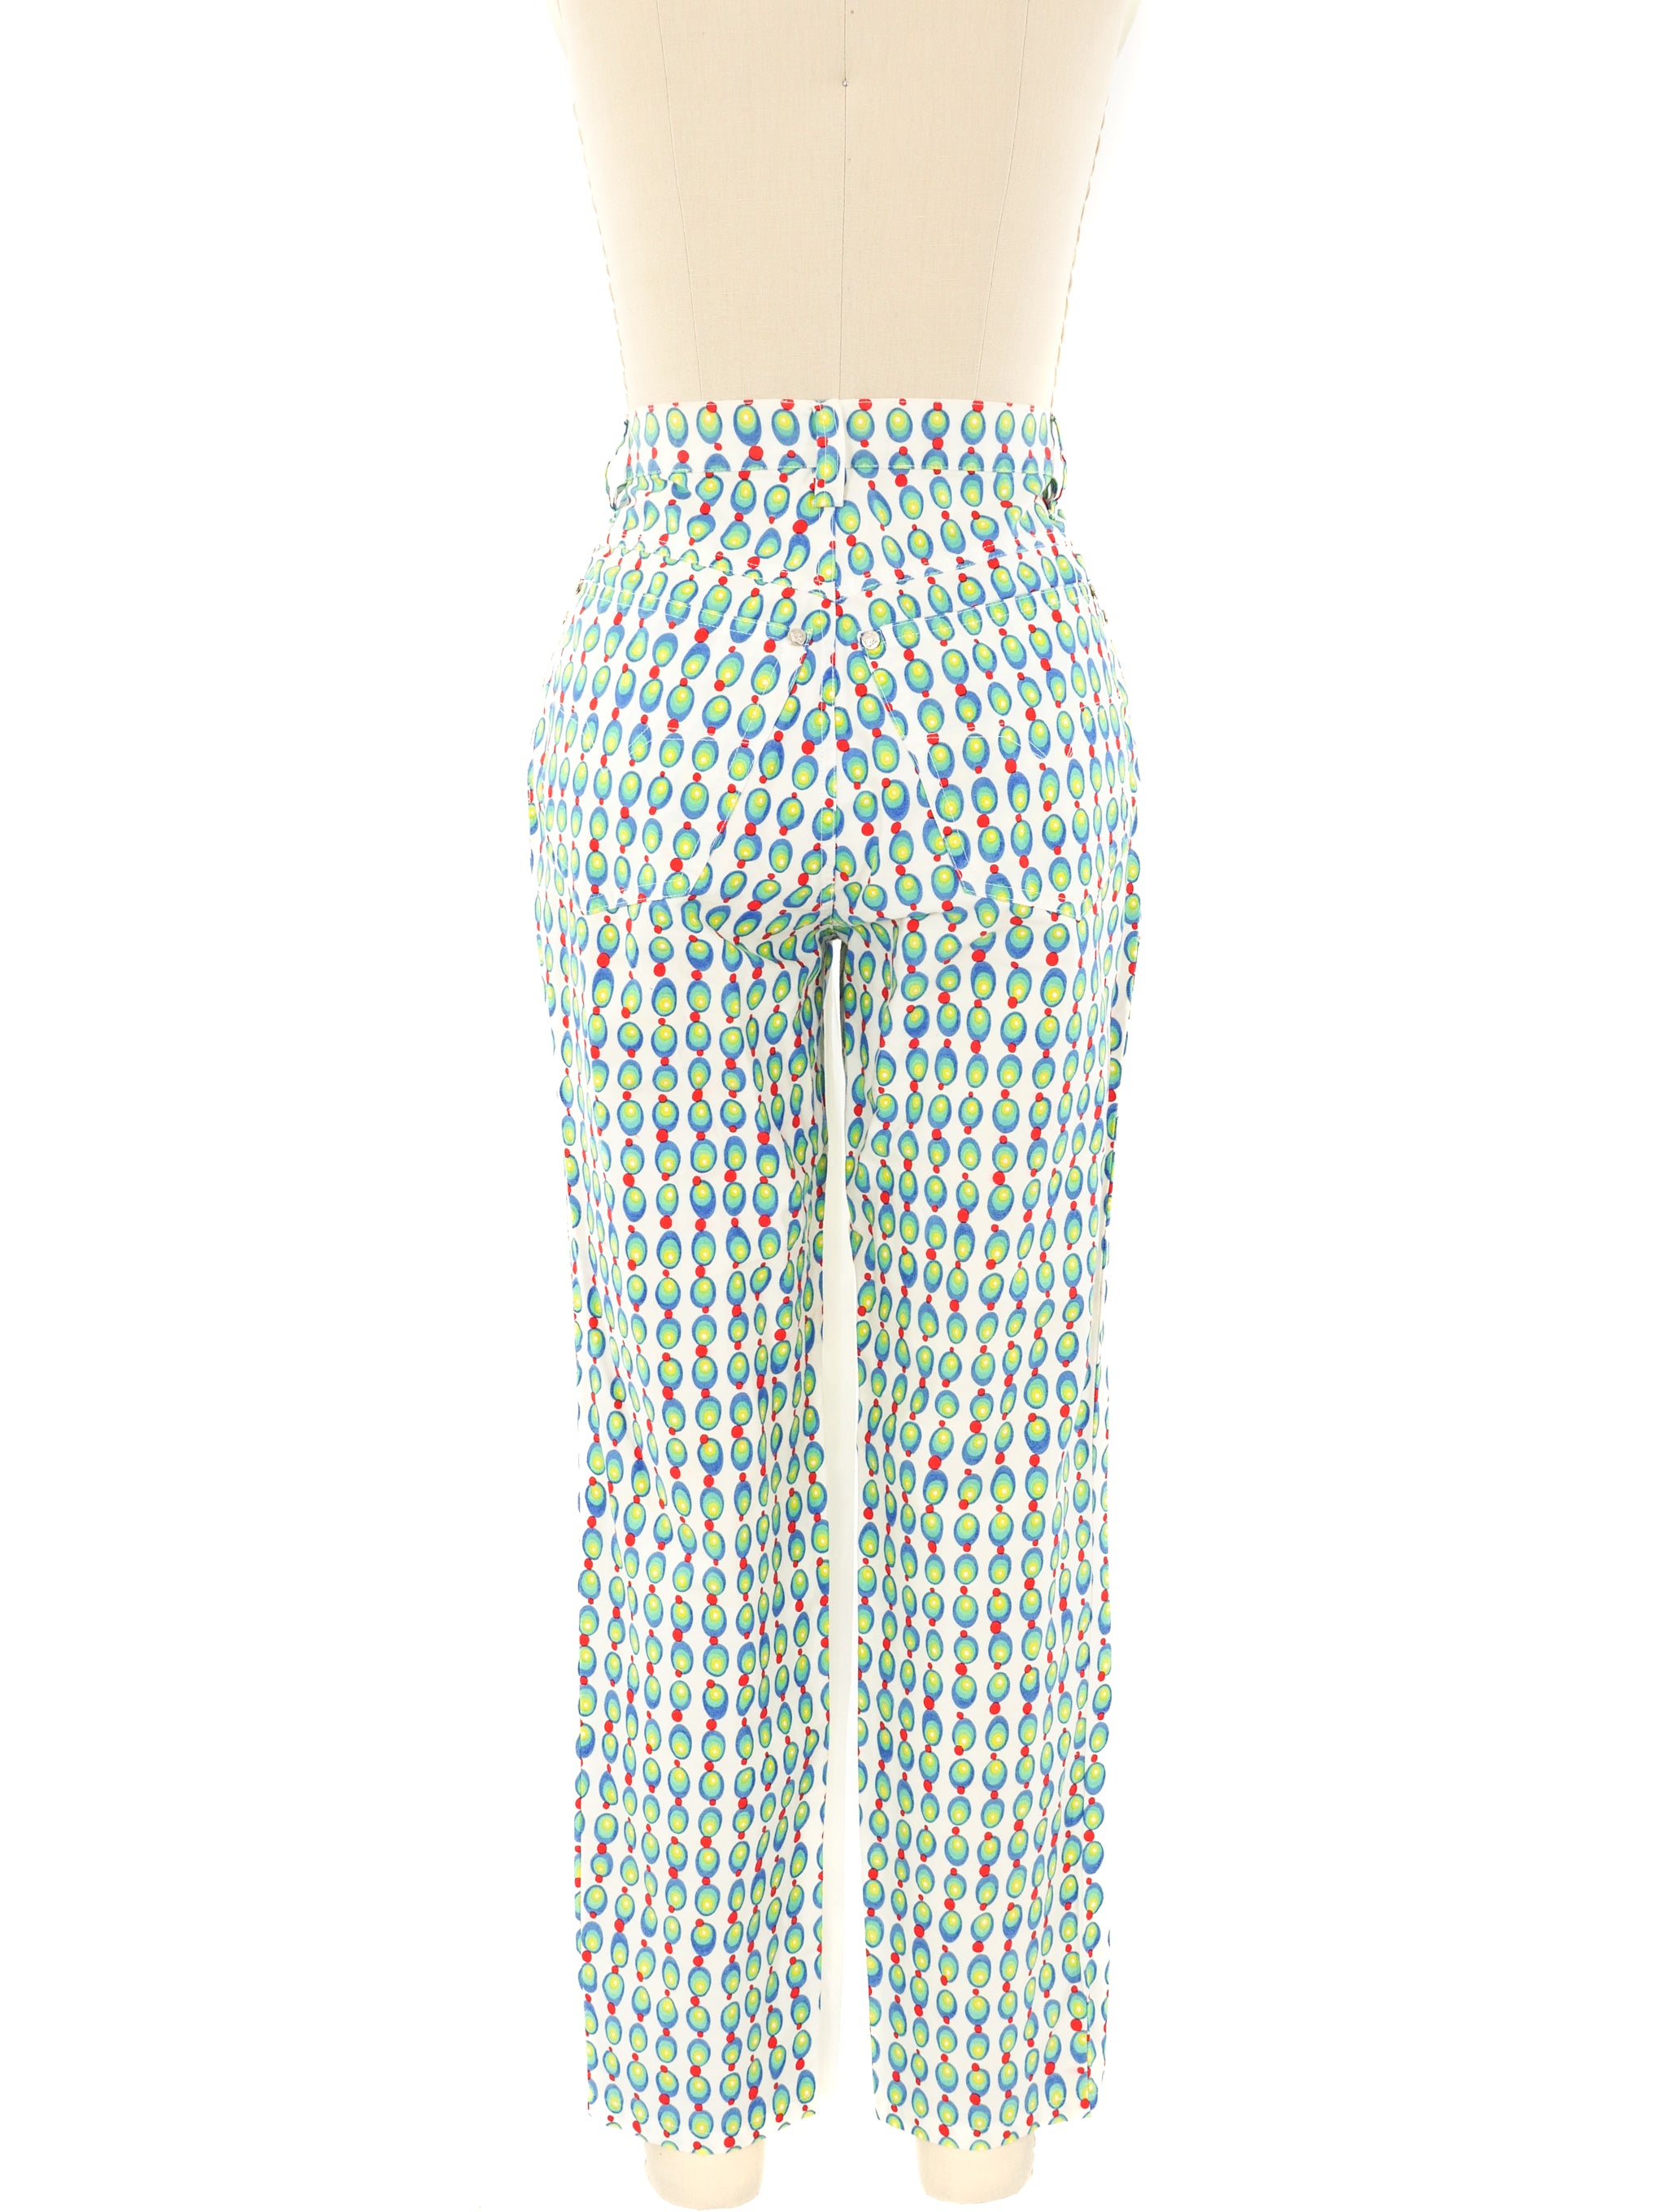 Gianni Versace Dot Printed Pants